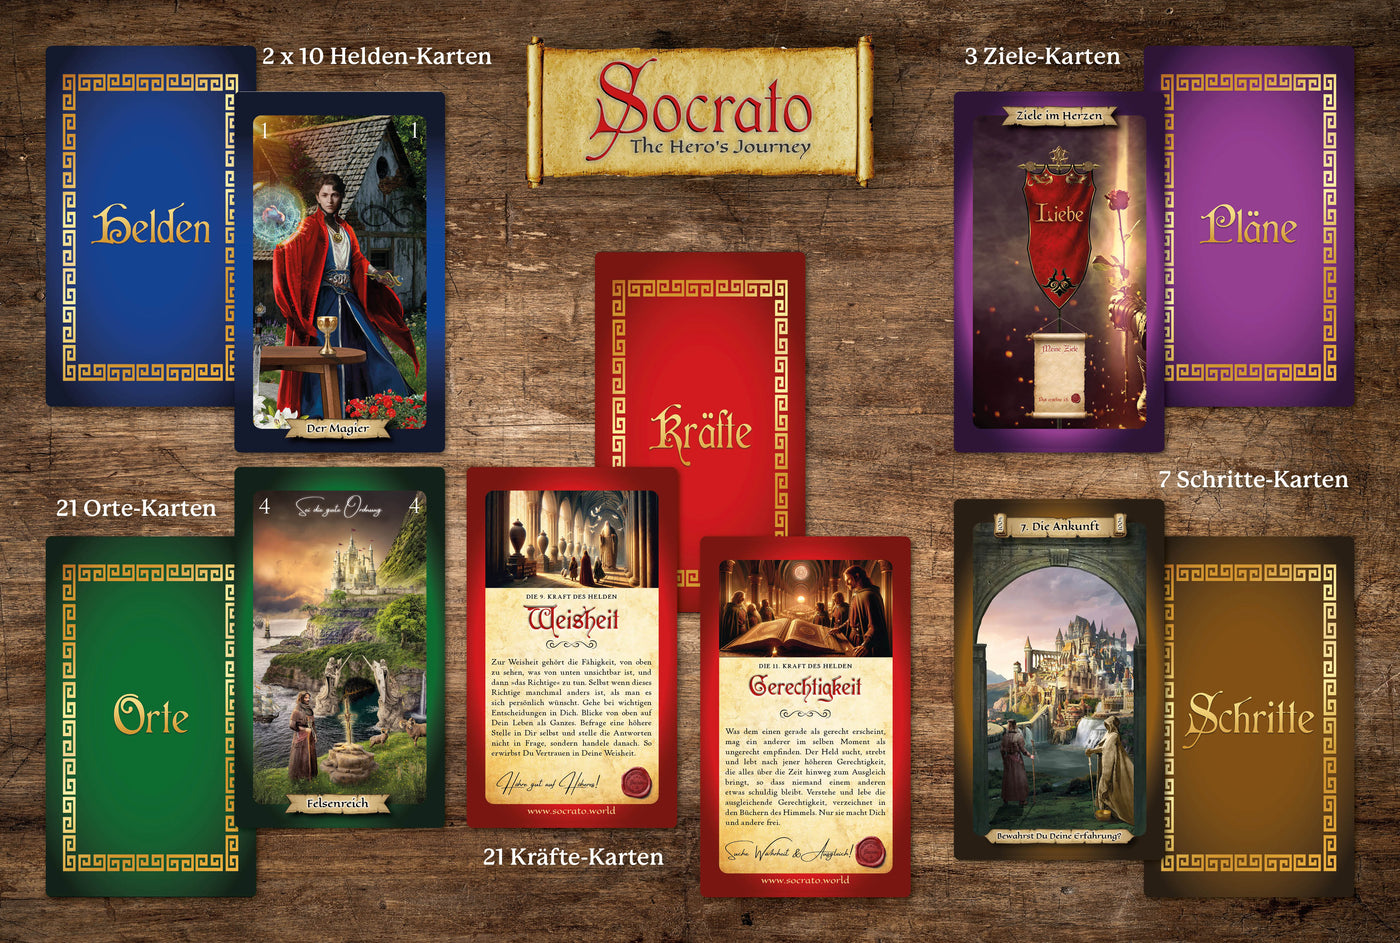 Socrato - Das Heldenreise-Tarot - mit leicht beschädigtem Karton